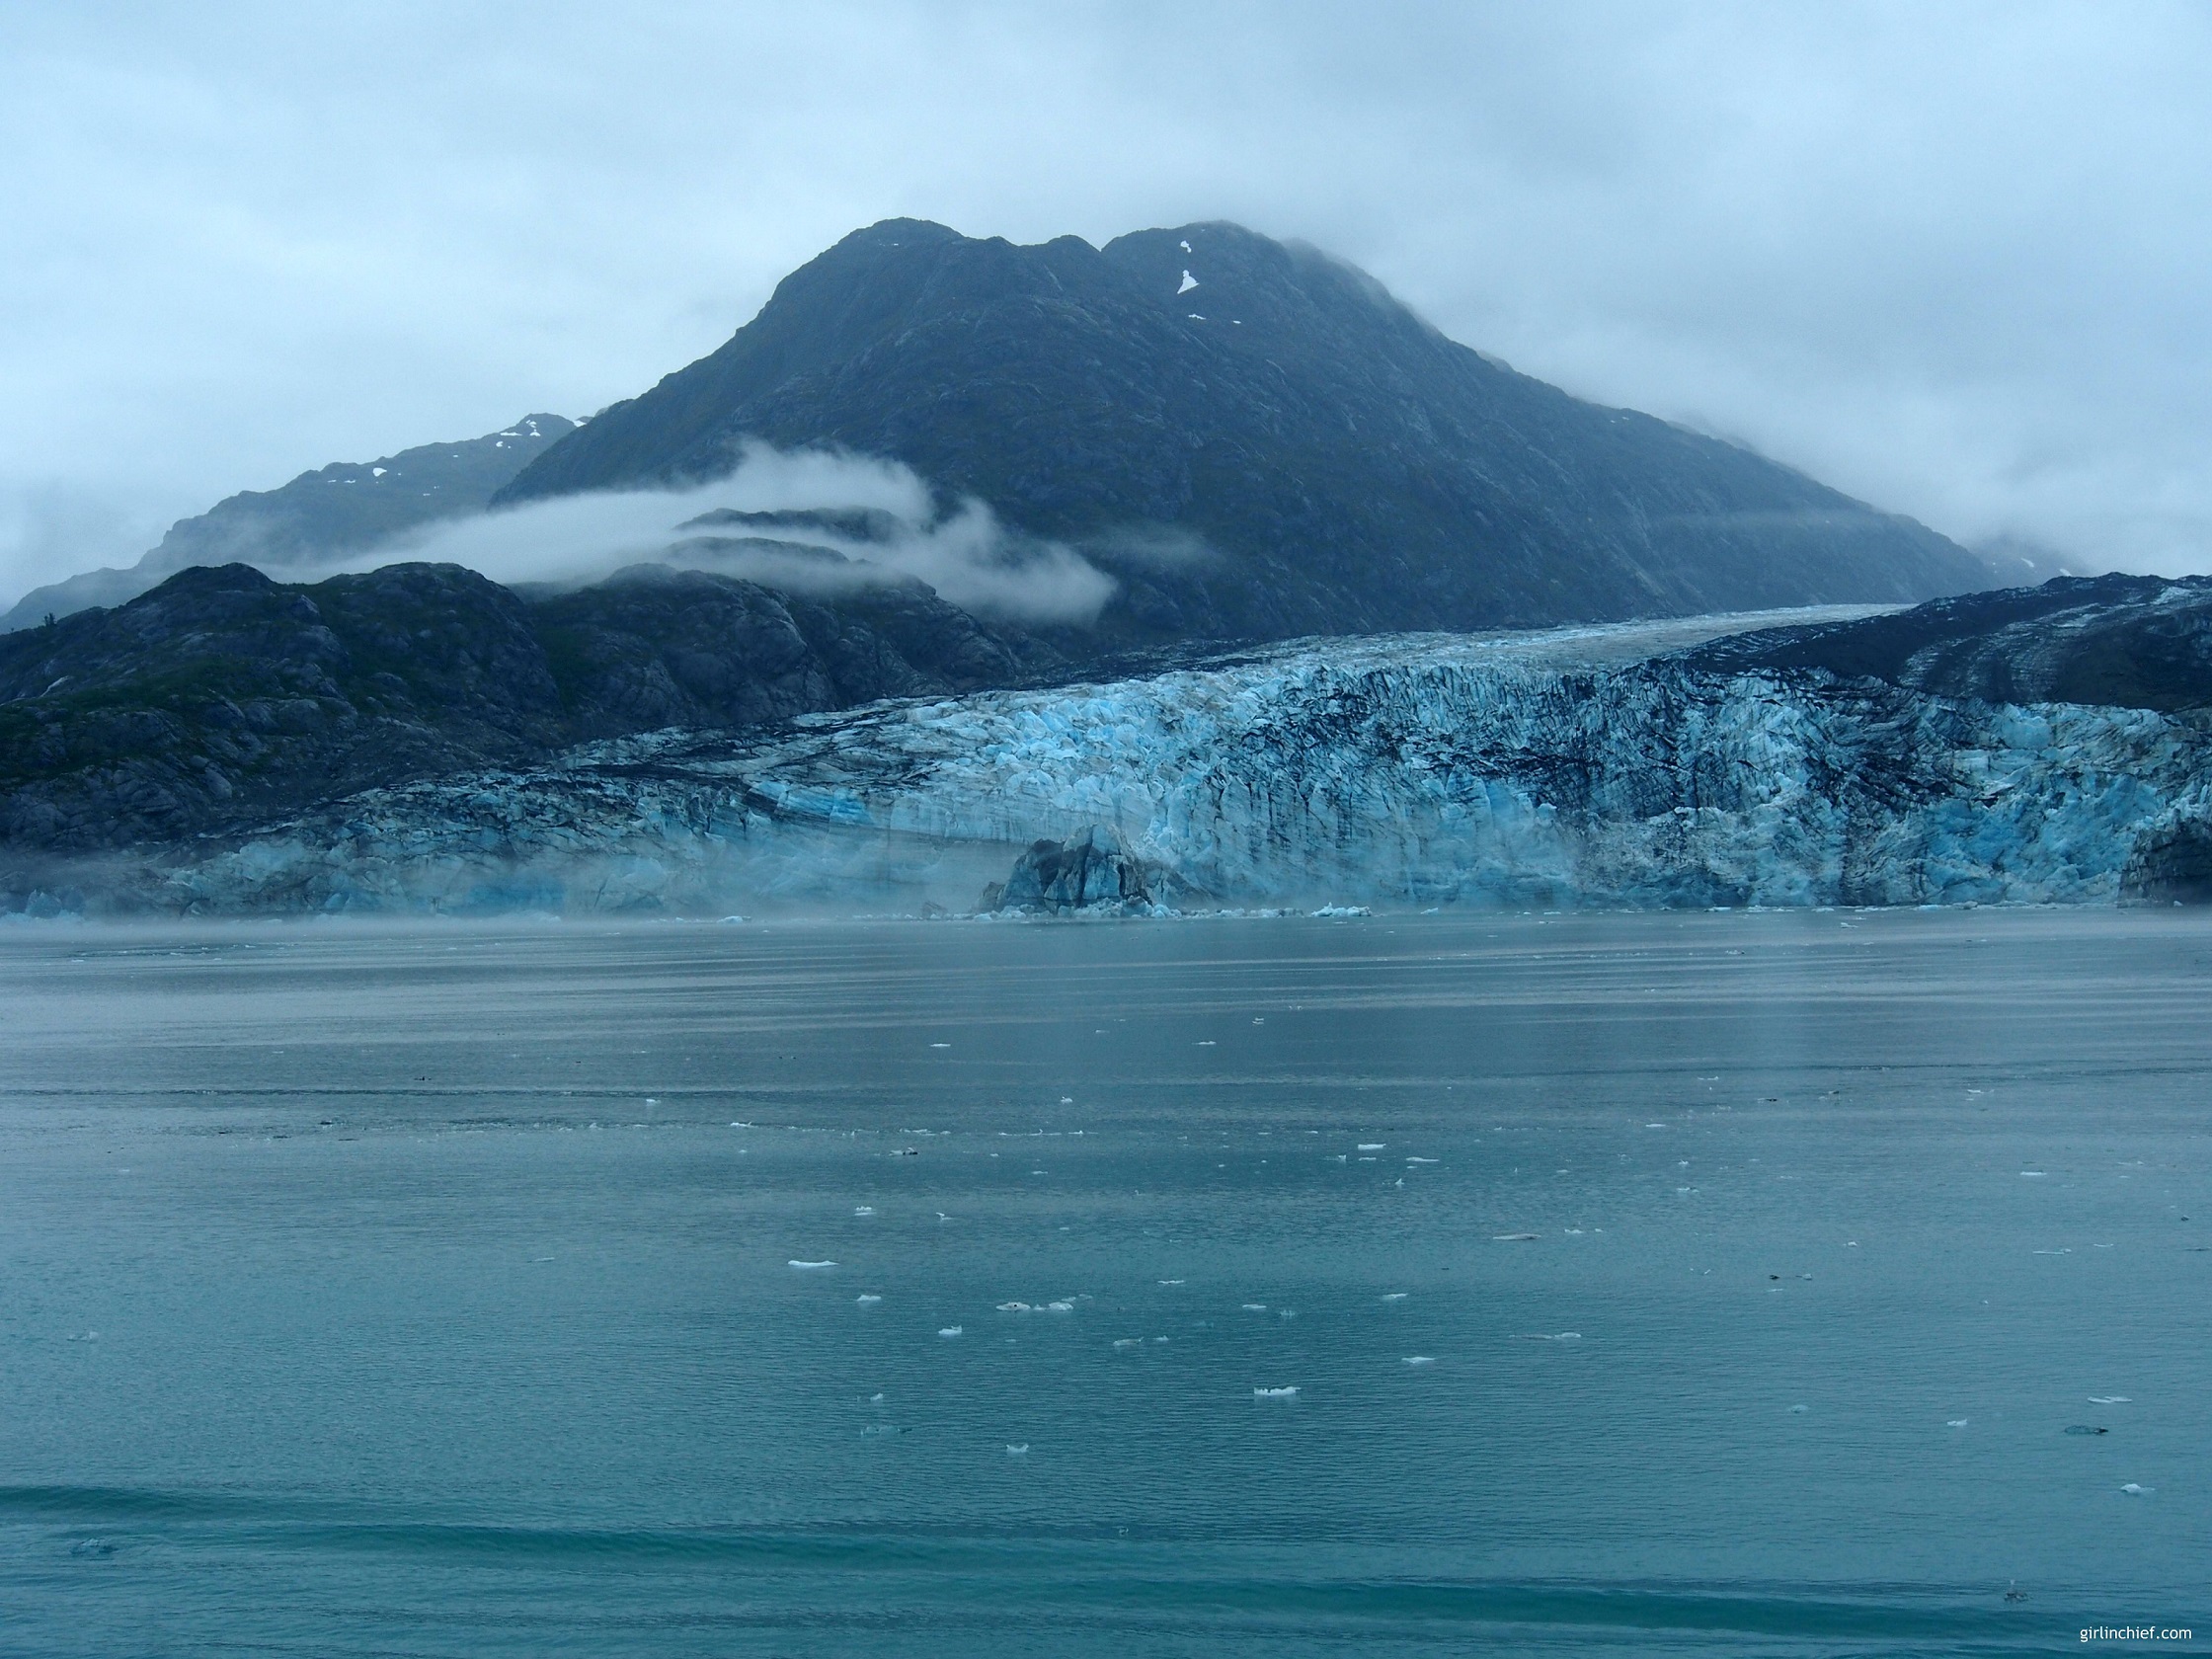 Alaska Cruise: Cruising Through Glacier Bay #alaskacruise #alaska #cruisevacation #glacierbay #glacier